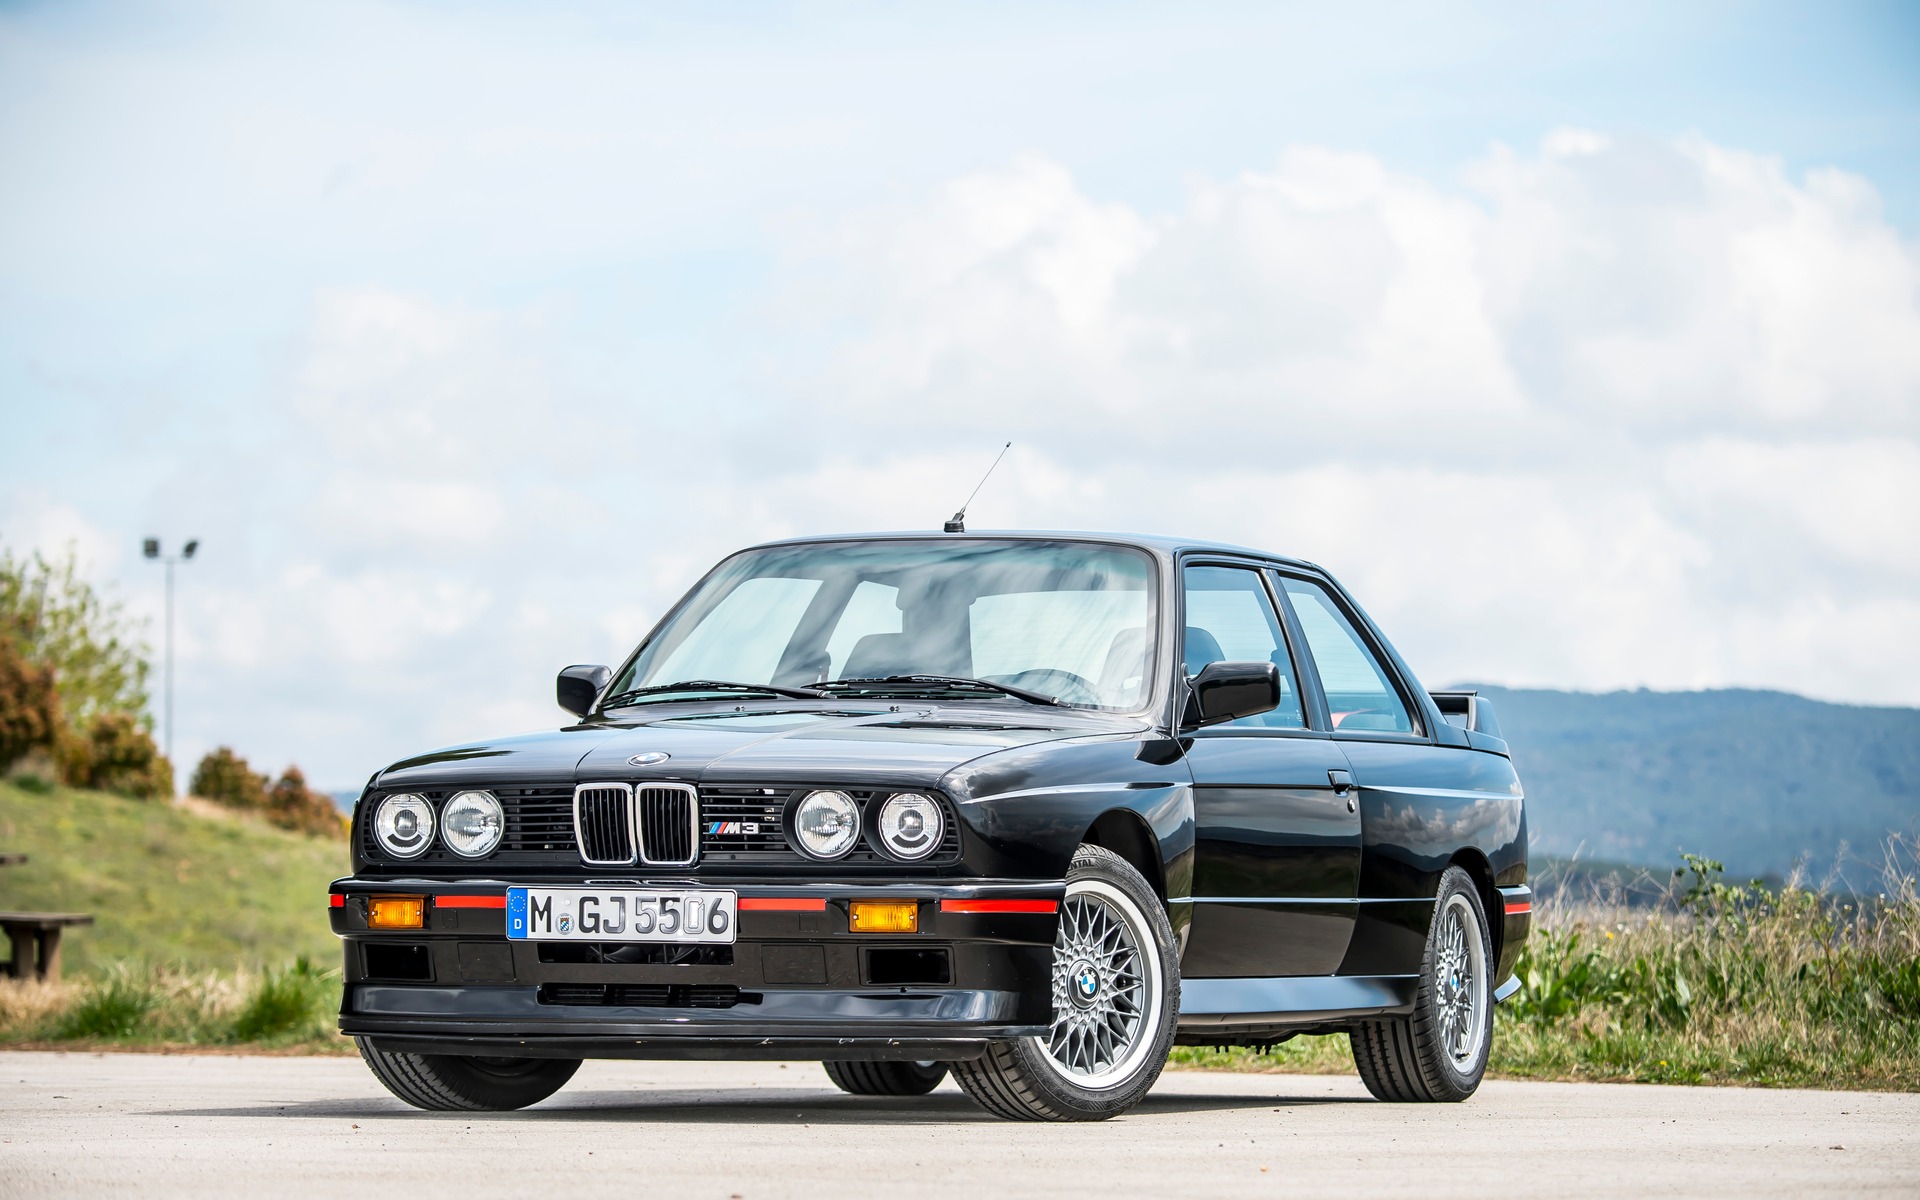 La première BMW M3 provient de l'année 1987